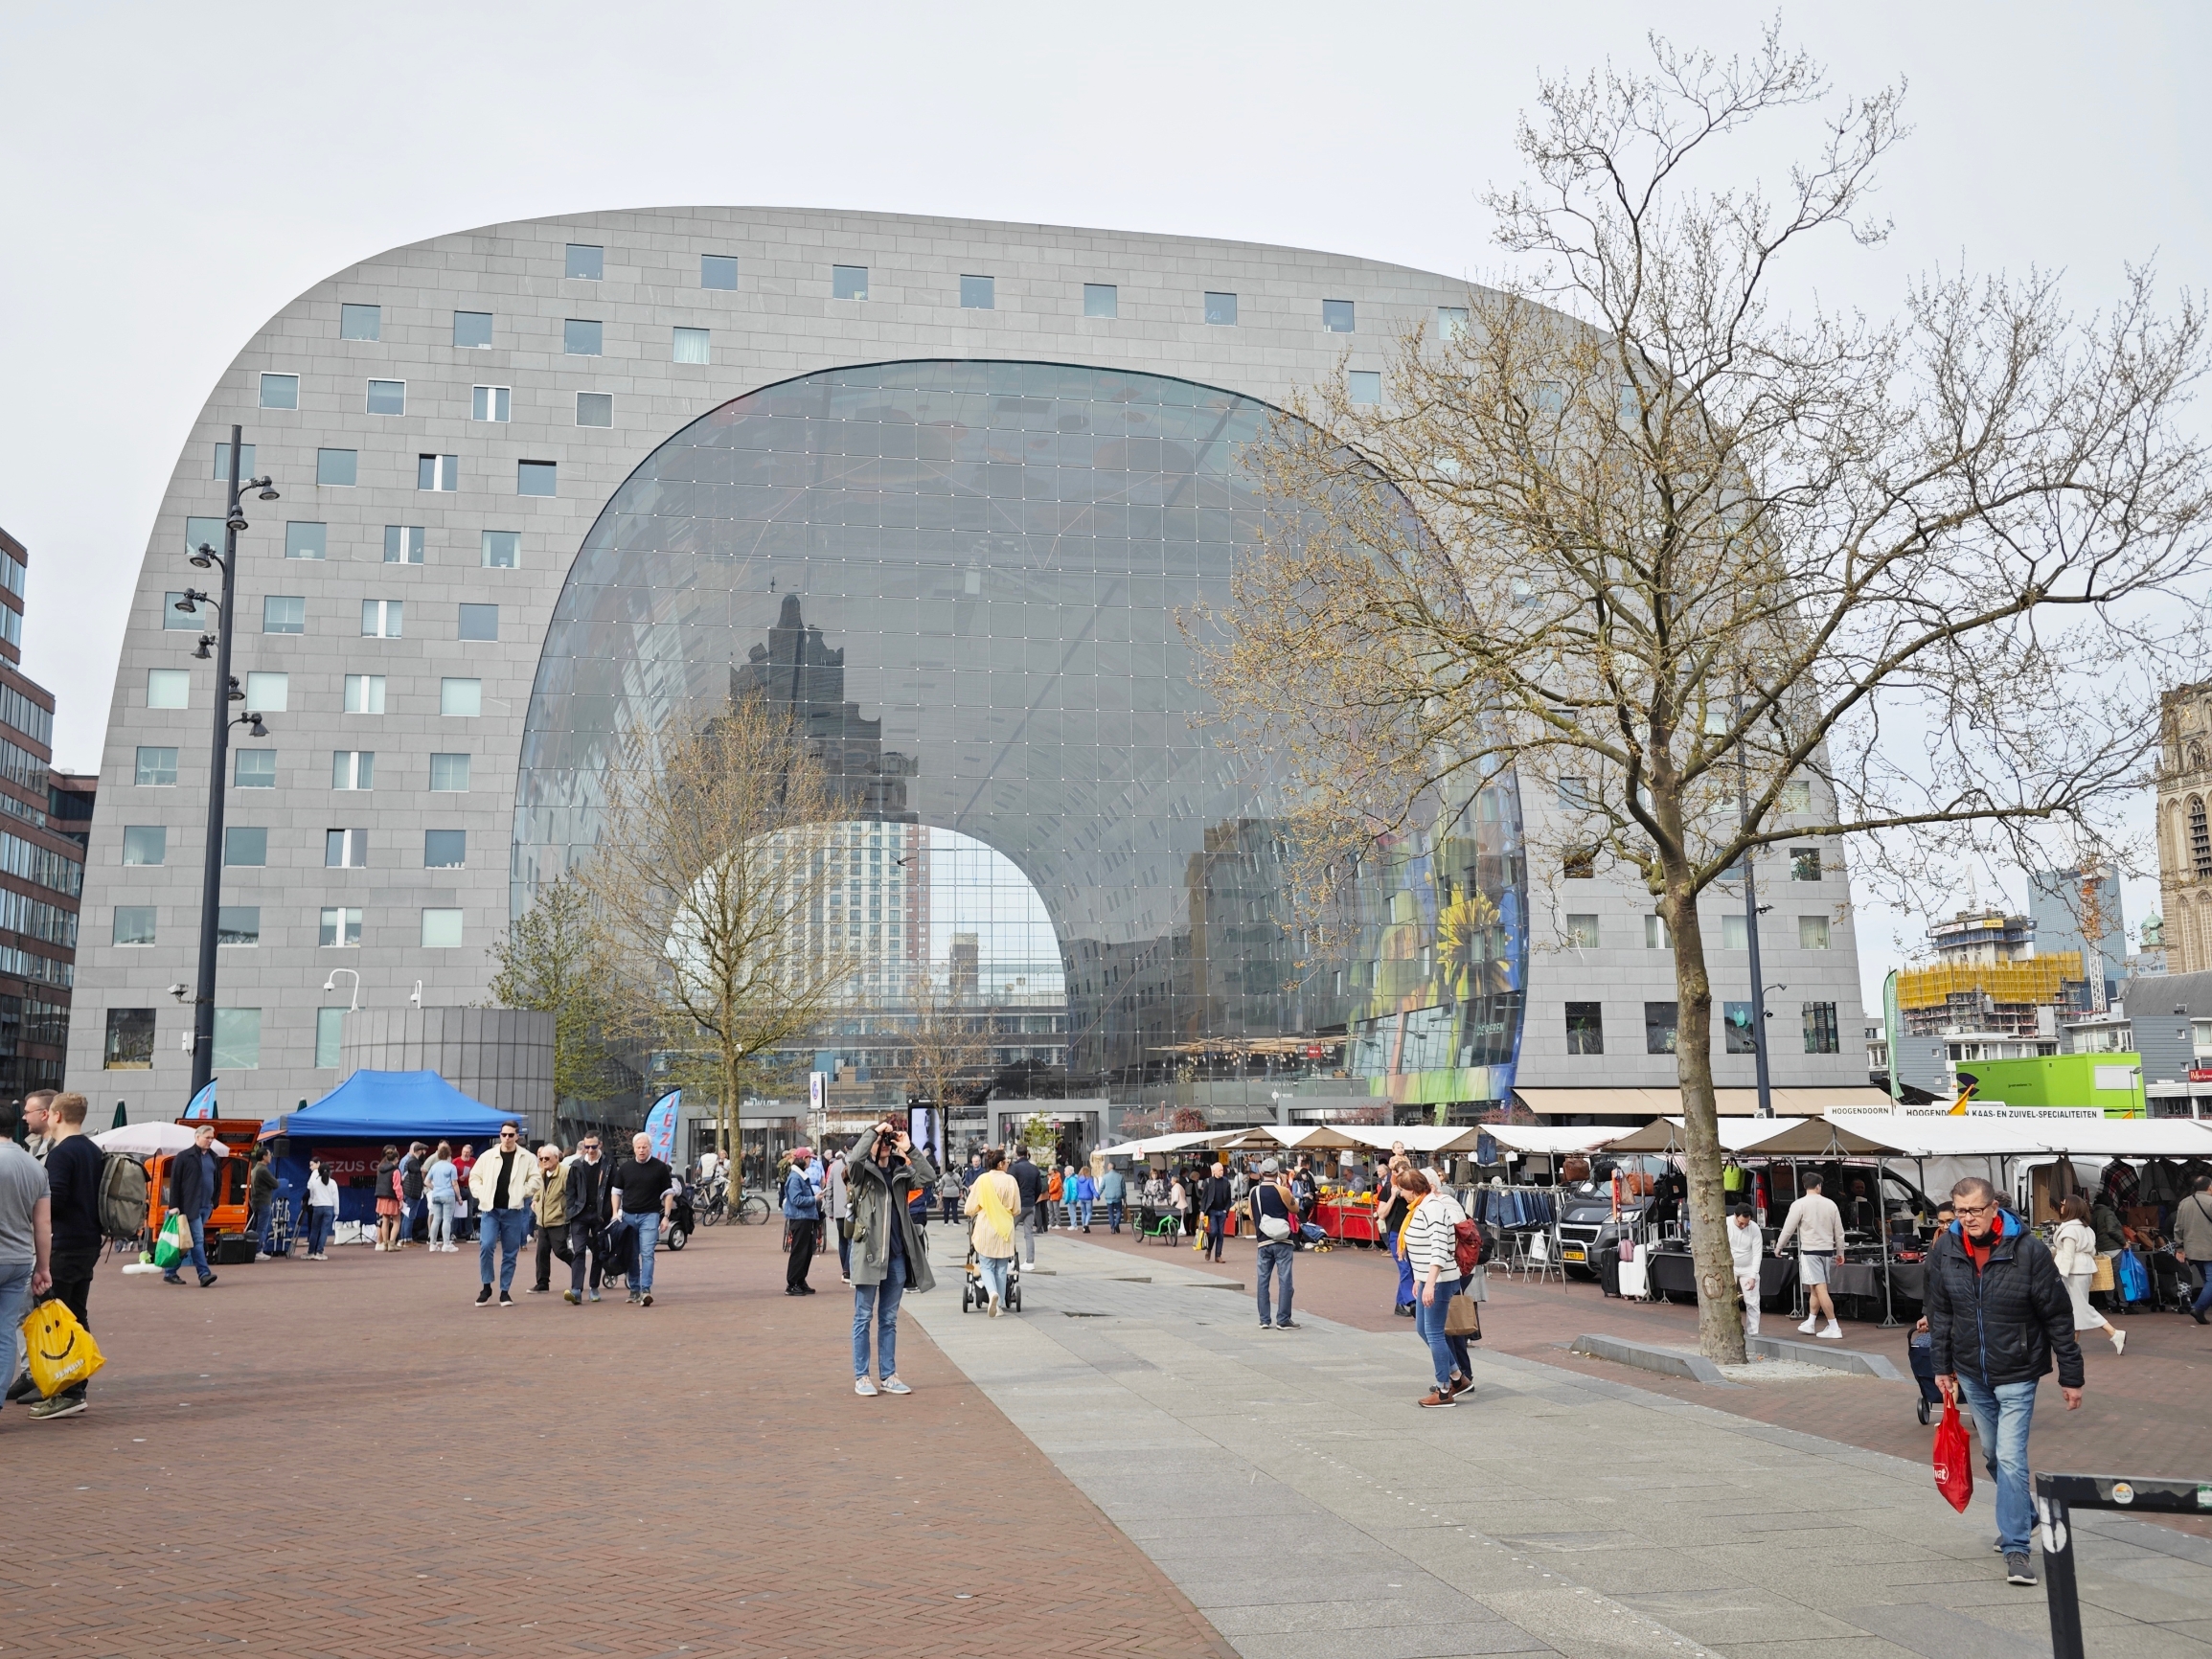 荷兰第二大城市鹿特丹，Markthal鹿特丹市场，这是在大型拱廊之中的广场，拱廊璧上有各种花卉，鱼鸟